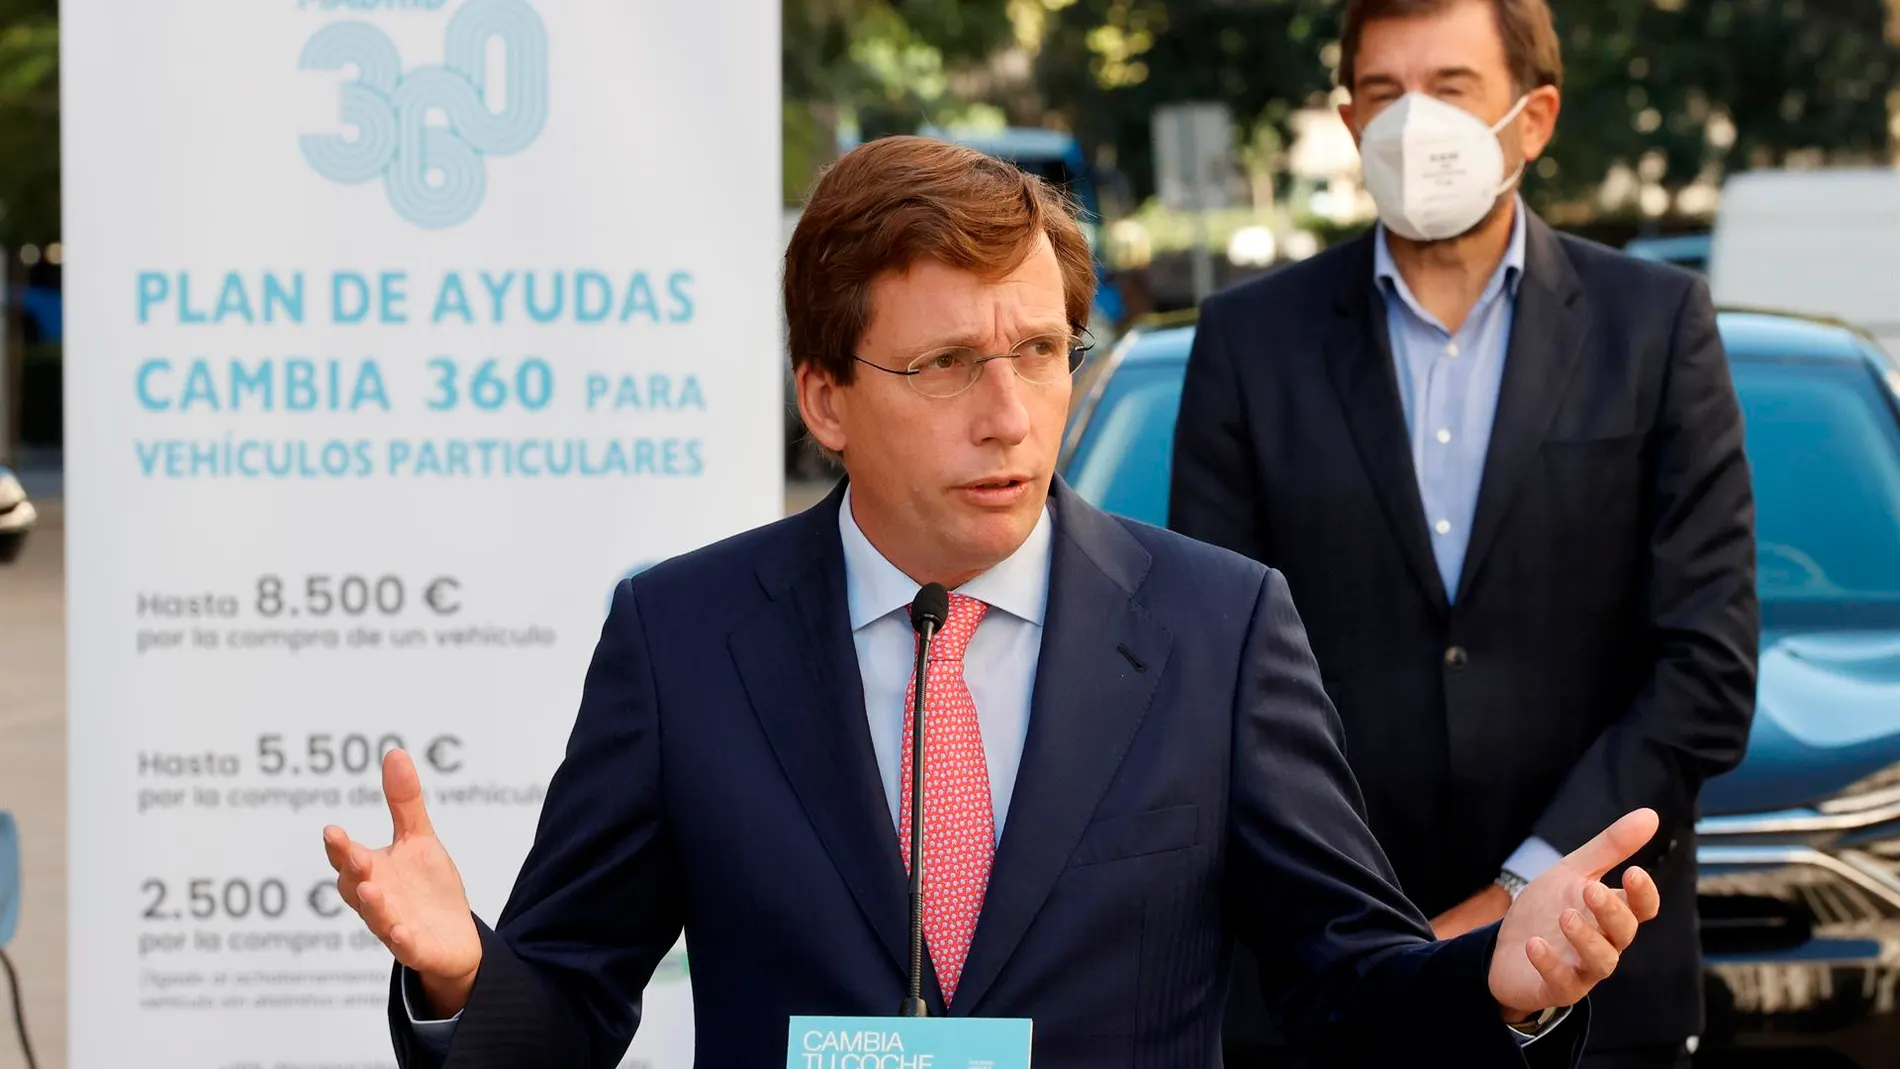 José Luis Martínez Almeida critica los bonos acusa a Sánchez de buscar "el voto cautivo" de los jóvenes